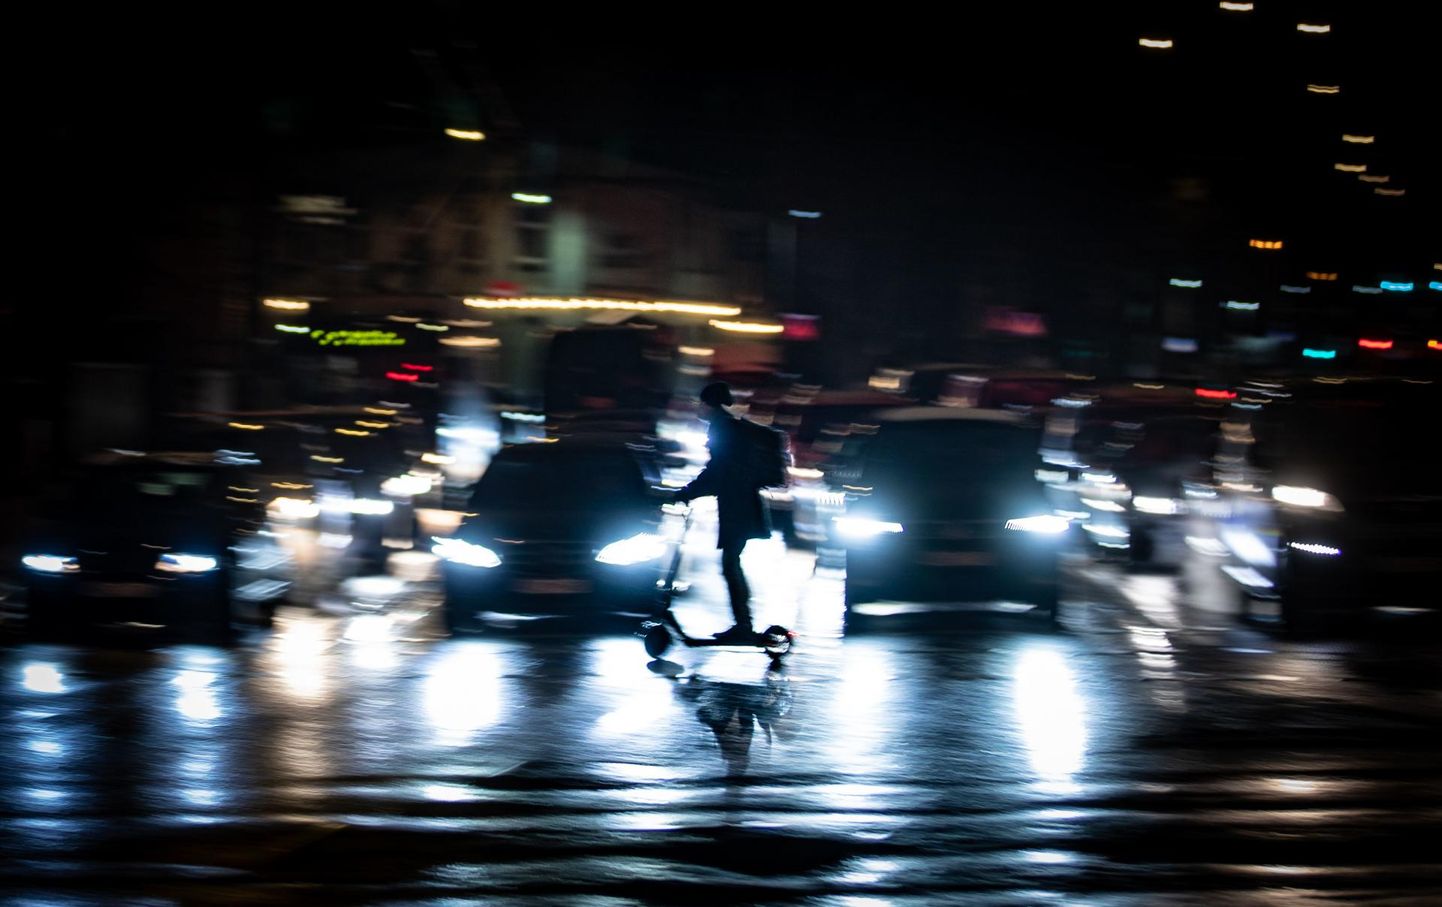 Liikluspiirangutega mängimine võib tekitada suure segaduse.
Pildil õhtune ummik Tallinnas Kristiine piirkonnas.